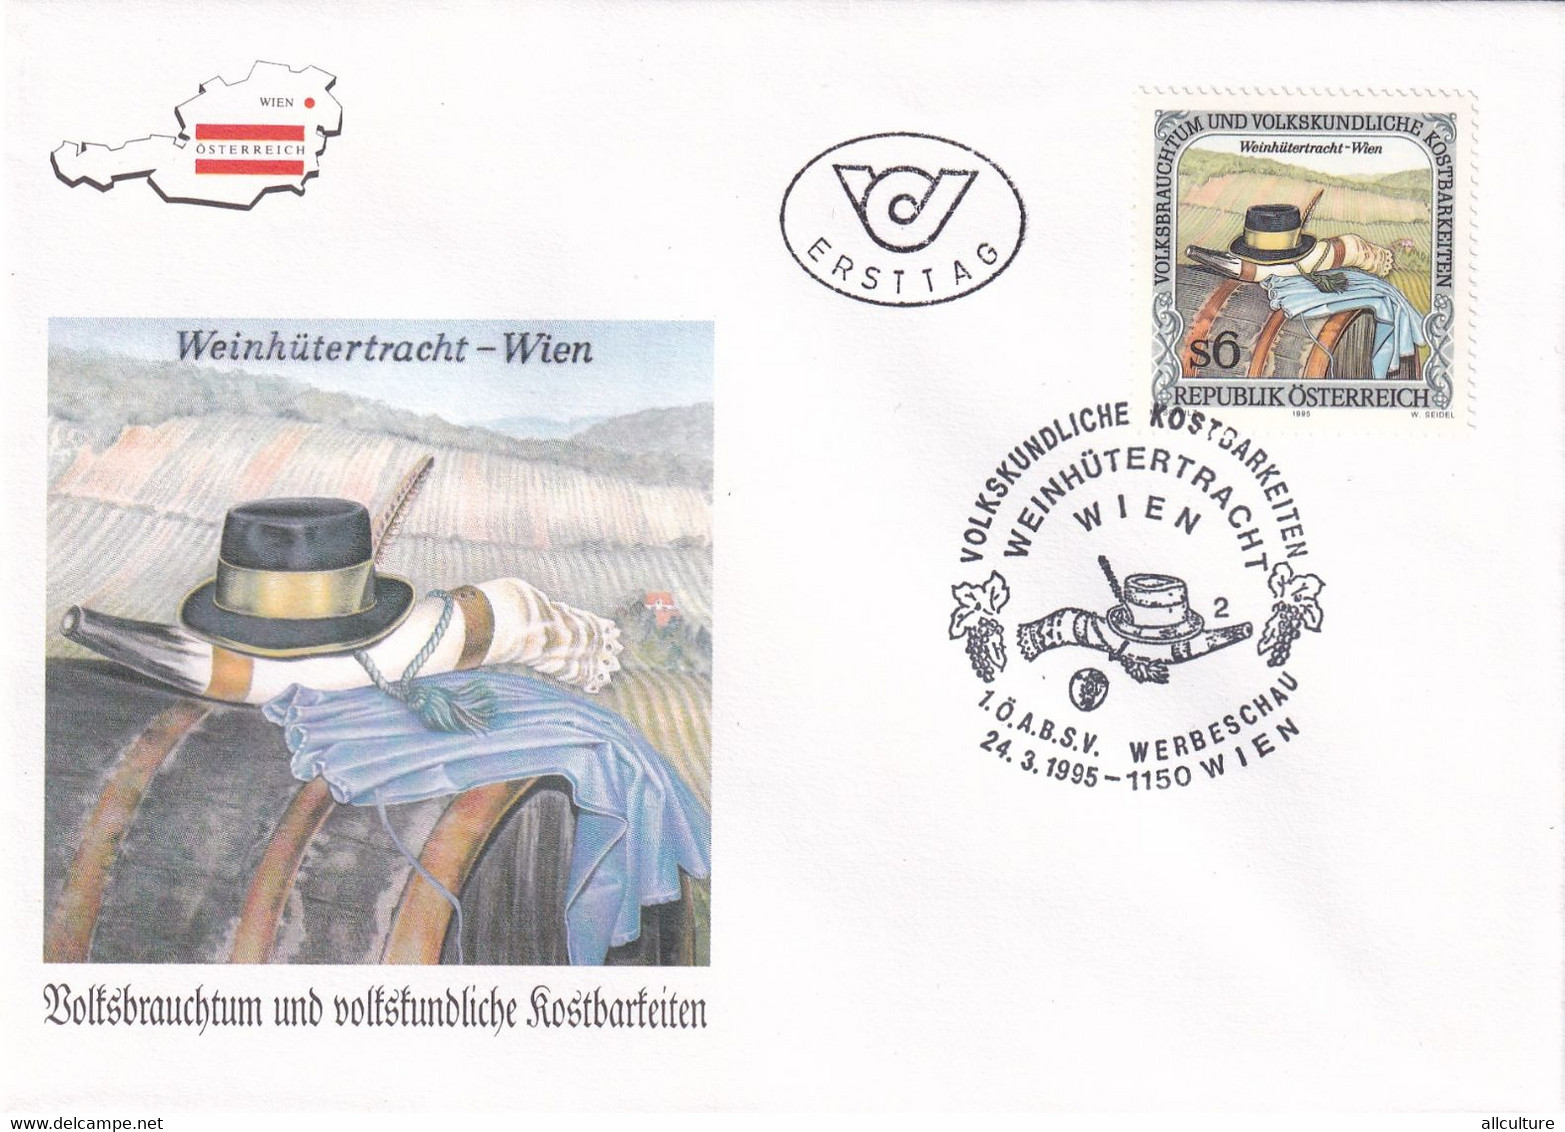 A8187 - WEINHUTERTRACHT, WEIN, ERSTTAG 1995  REPUBLIC OESTERREICH USED STAMP ON COVER AUSTRIA - Lettres & Documents